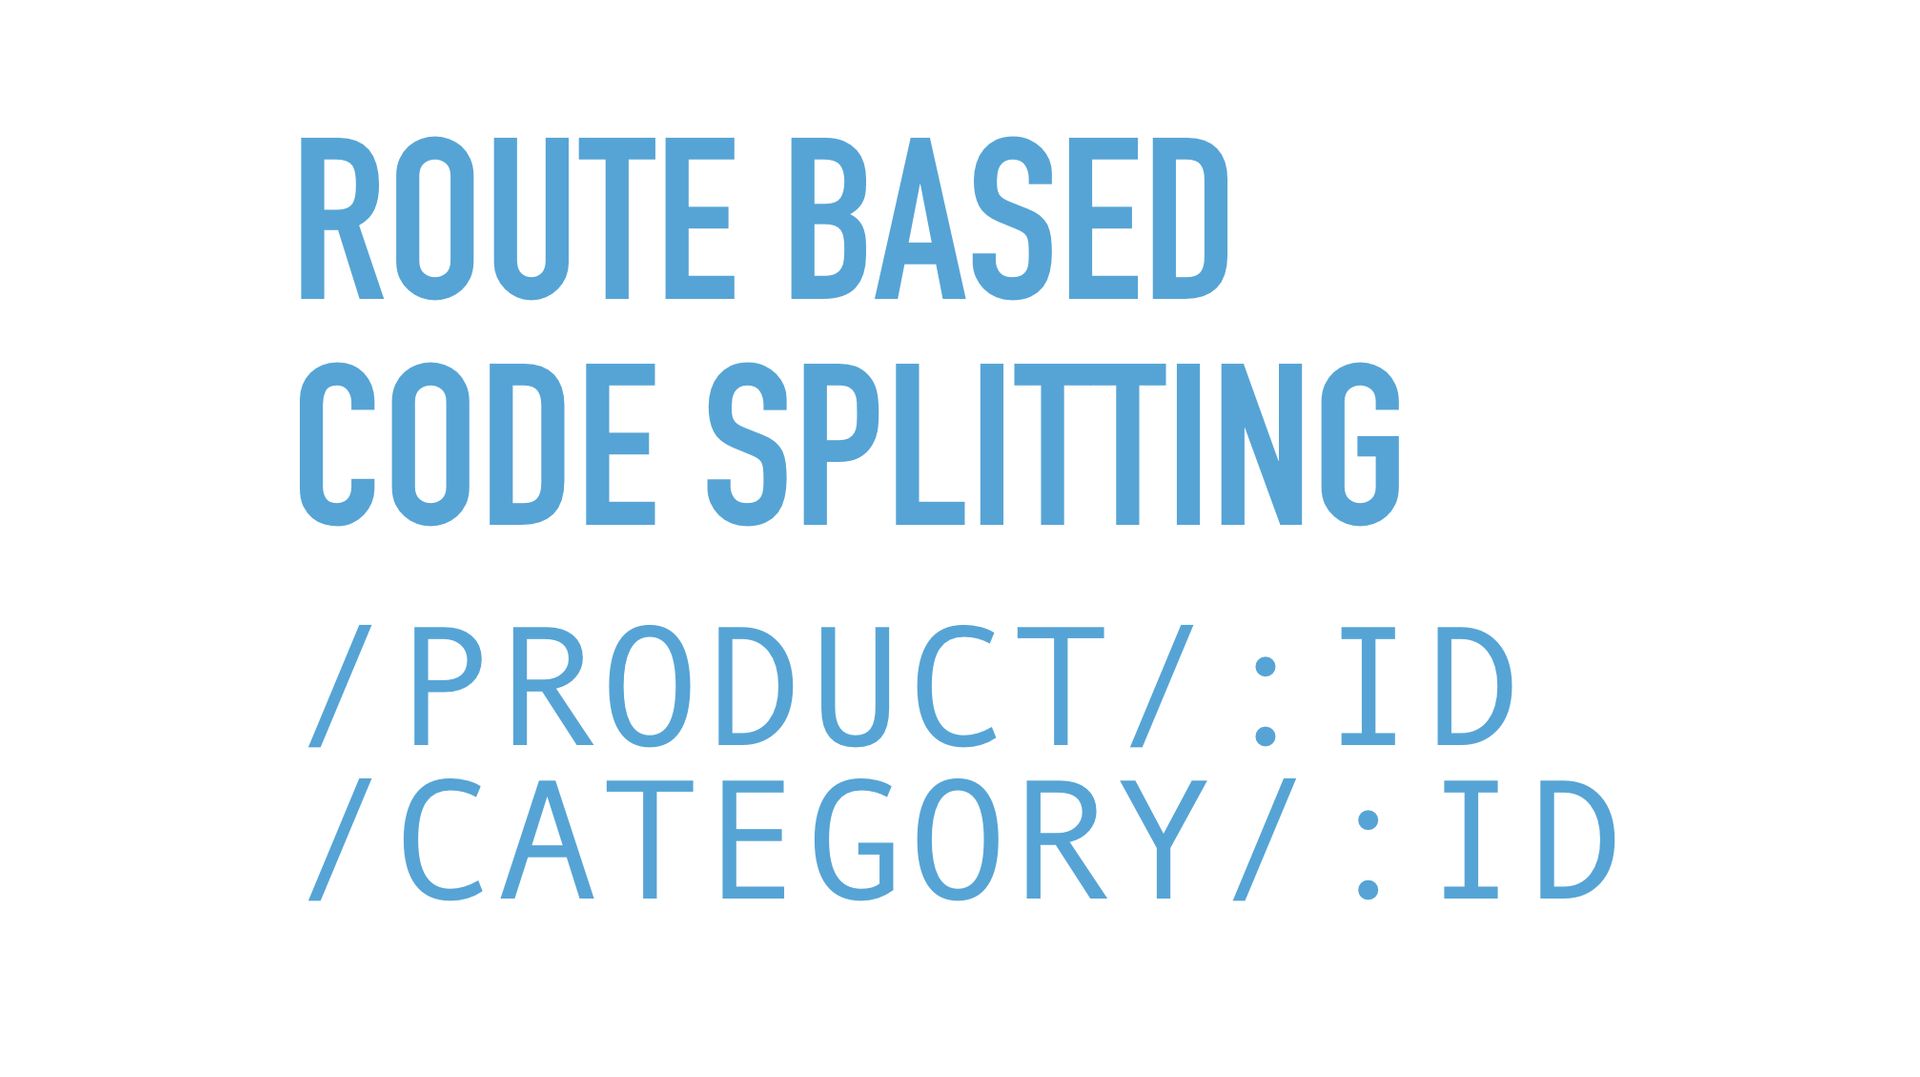 Slide text: Route based code splitting